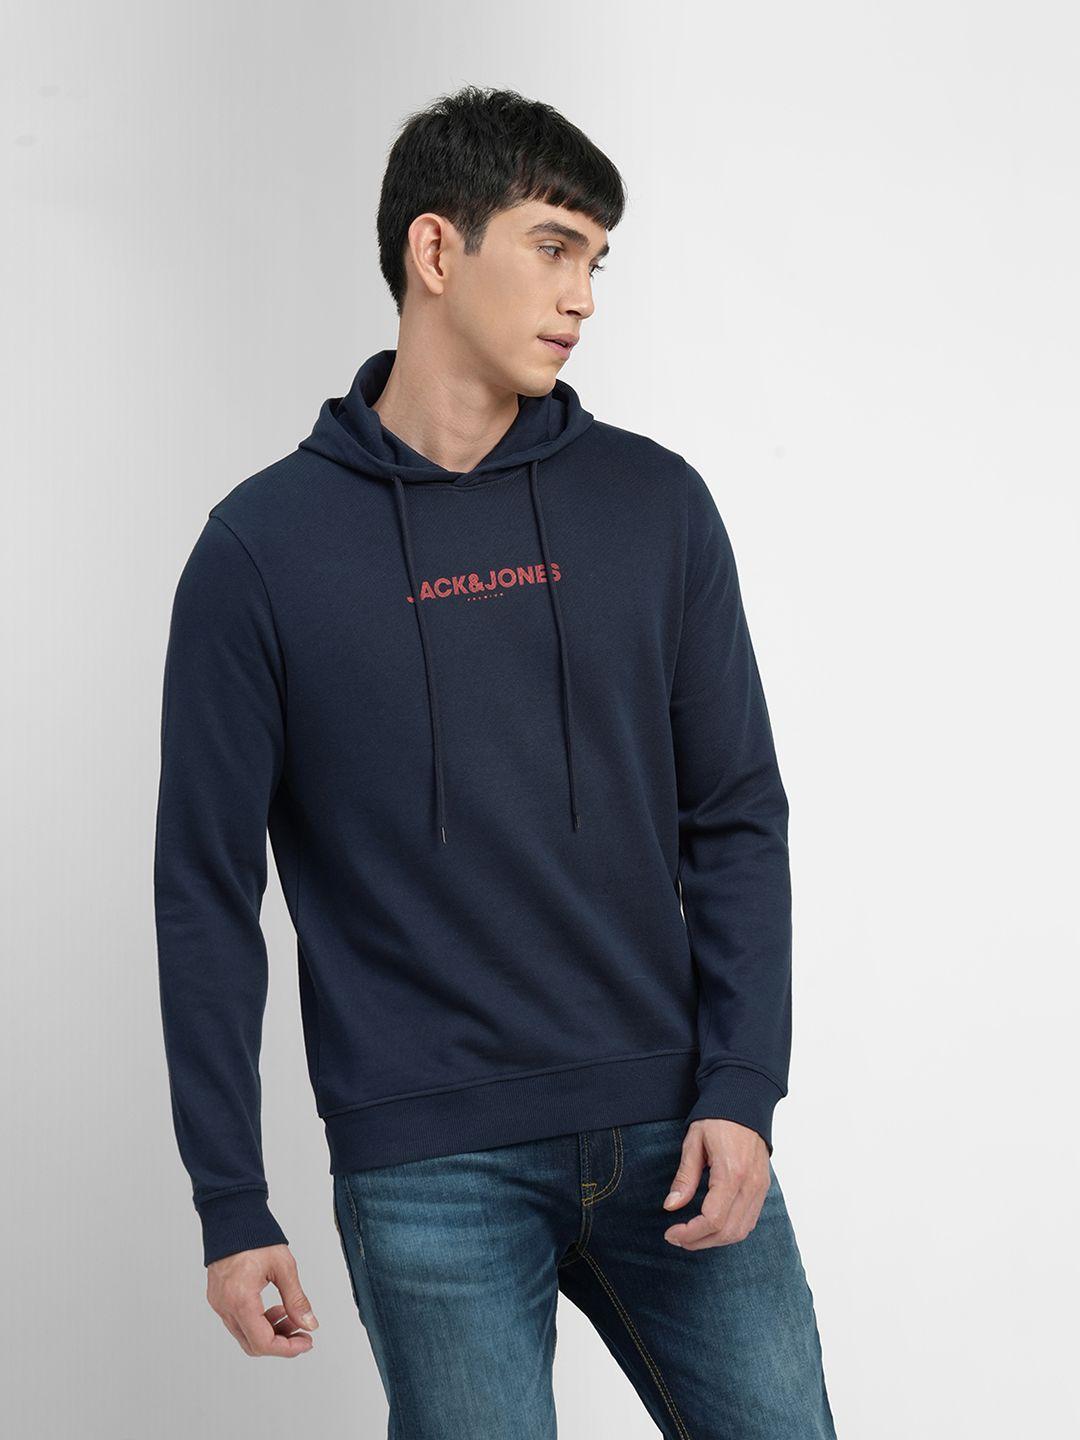 jack-&-jones-men-blue-brand-logo-printed-hooded-sweatshirt